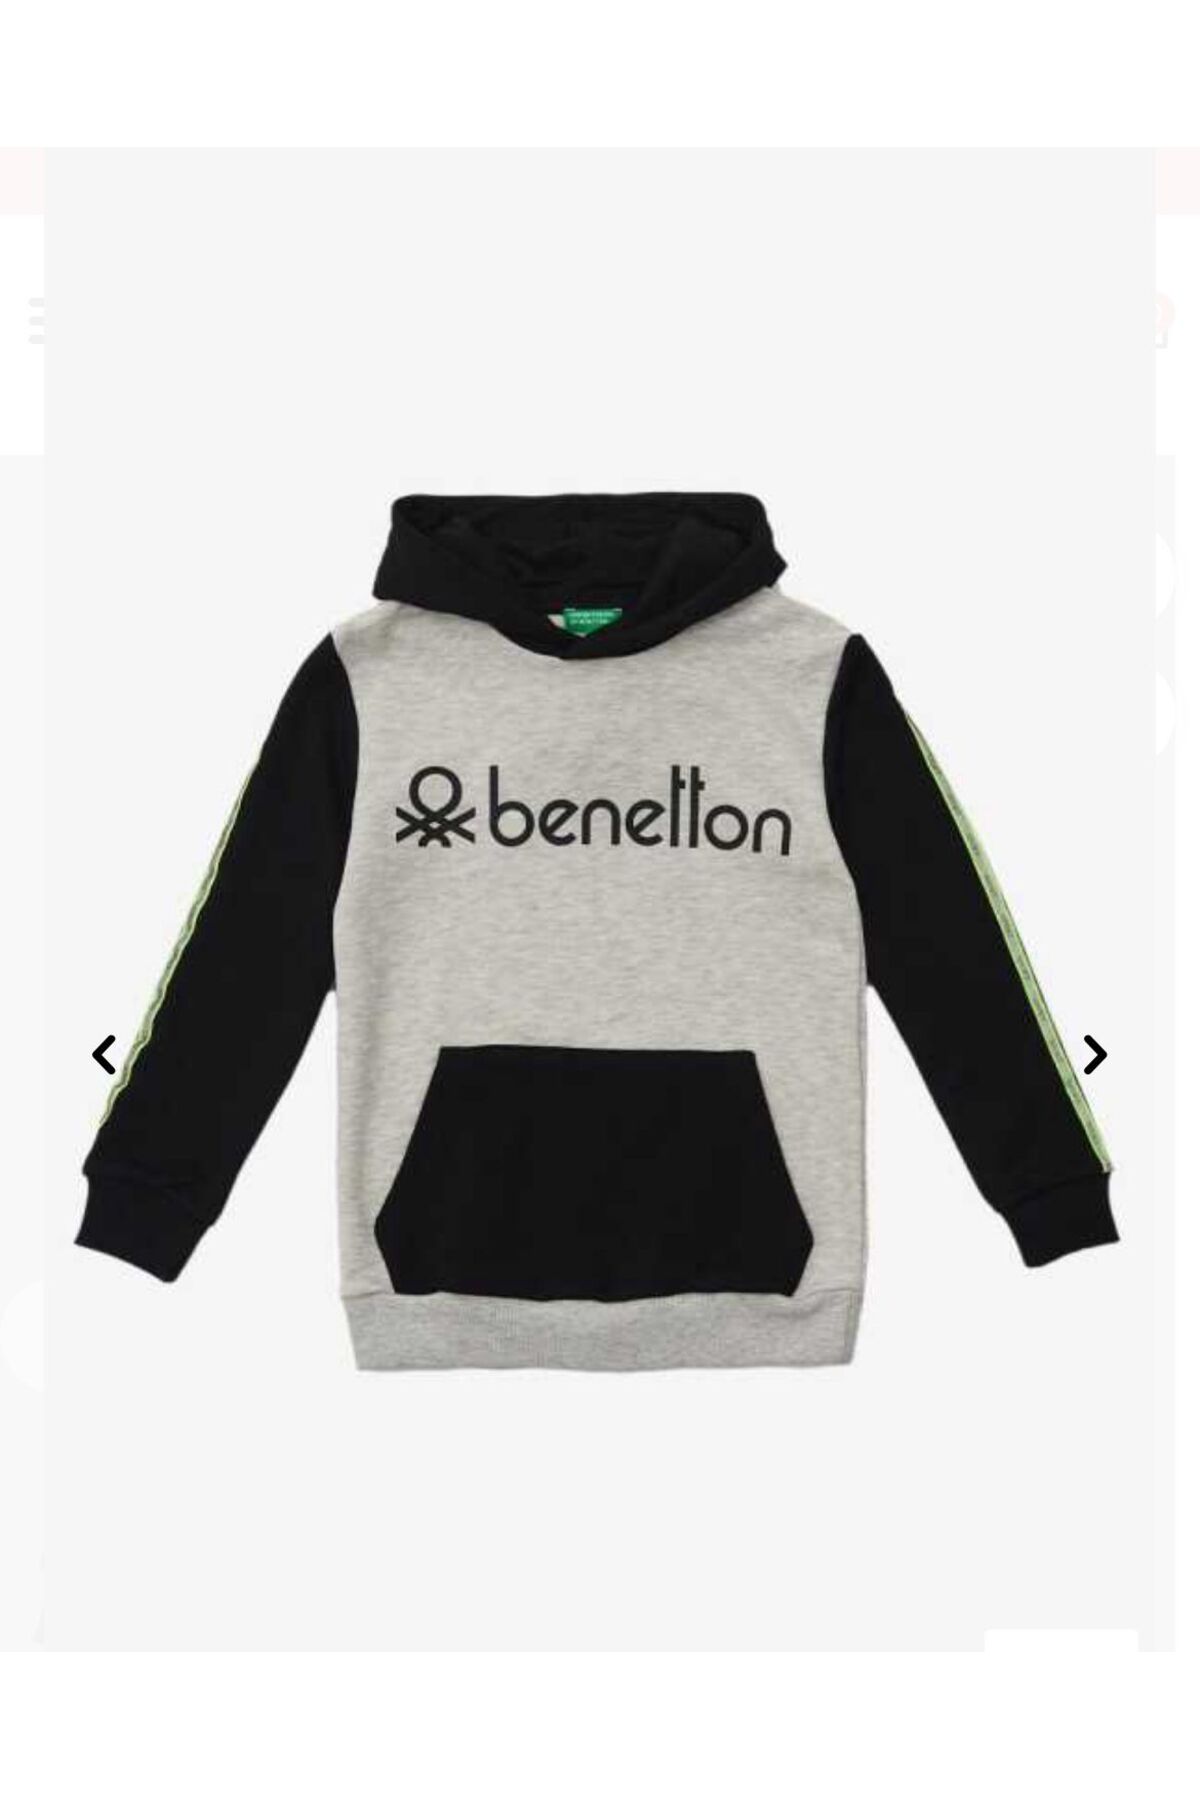 Benetton Bnt-B20915 Erkek Çocuk Sweatshirt Siyah